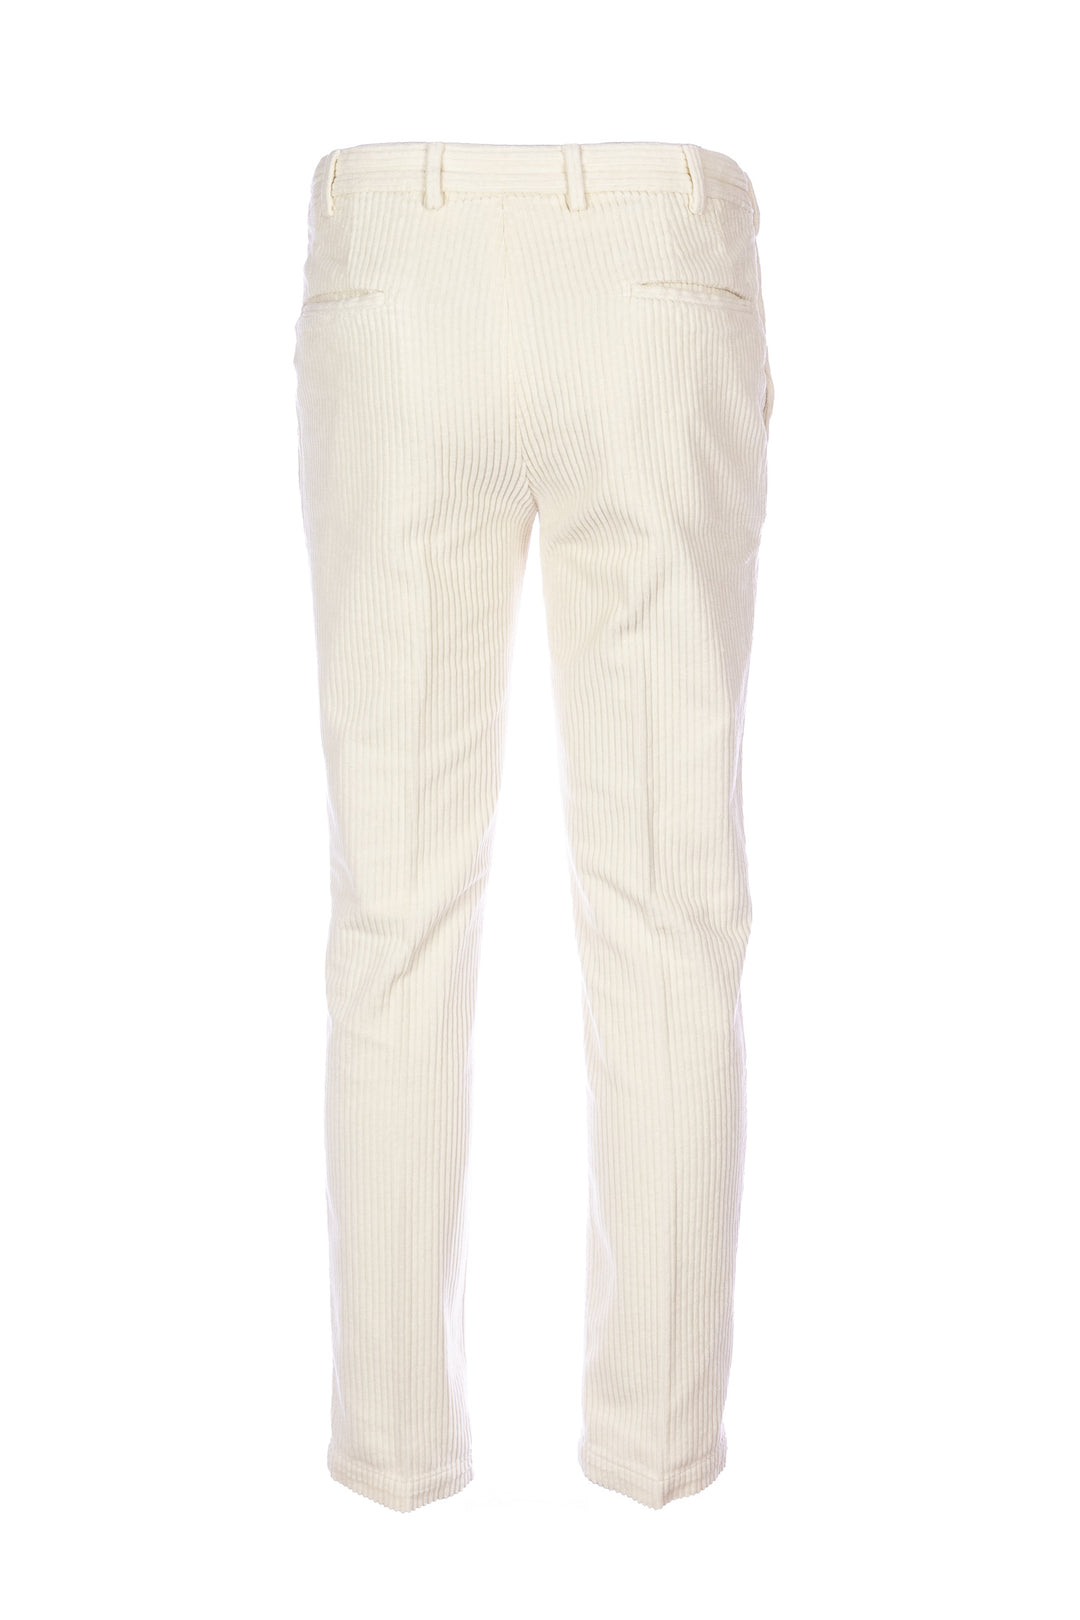 DEVORE Pantalone bianco latte in velluto rocciatore con vita elastica - Mancinelli 1954